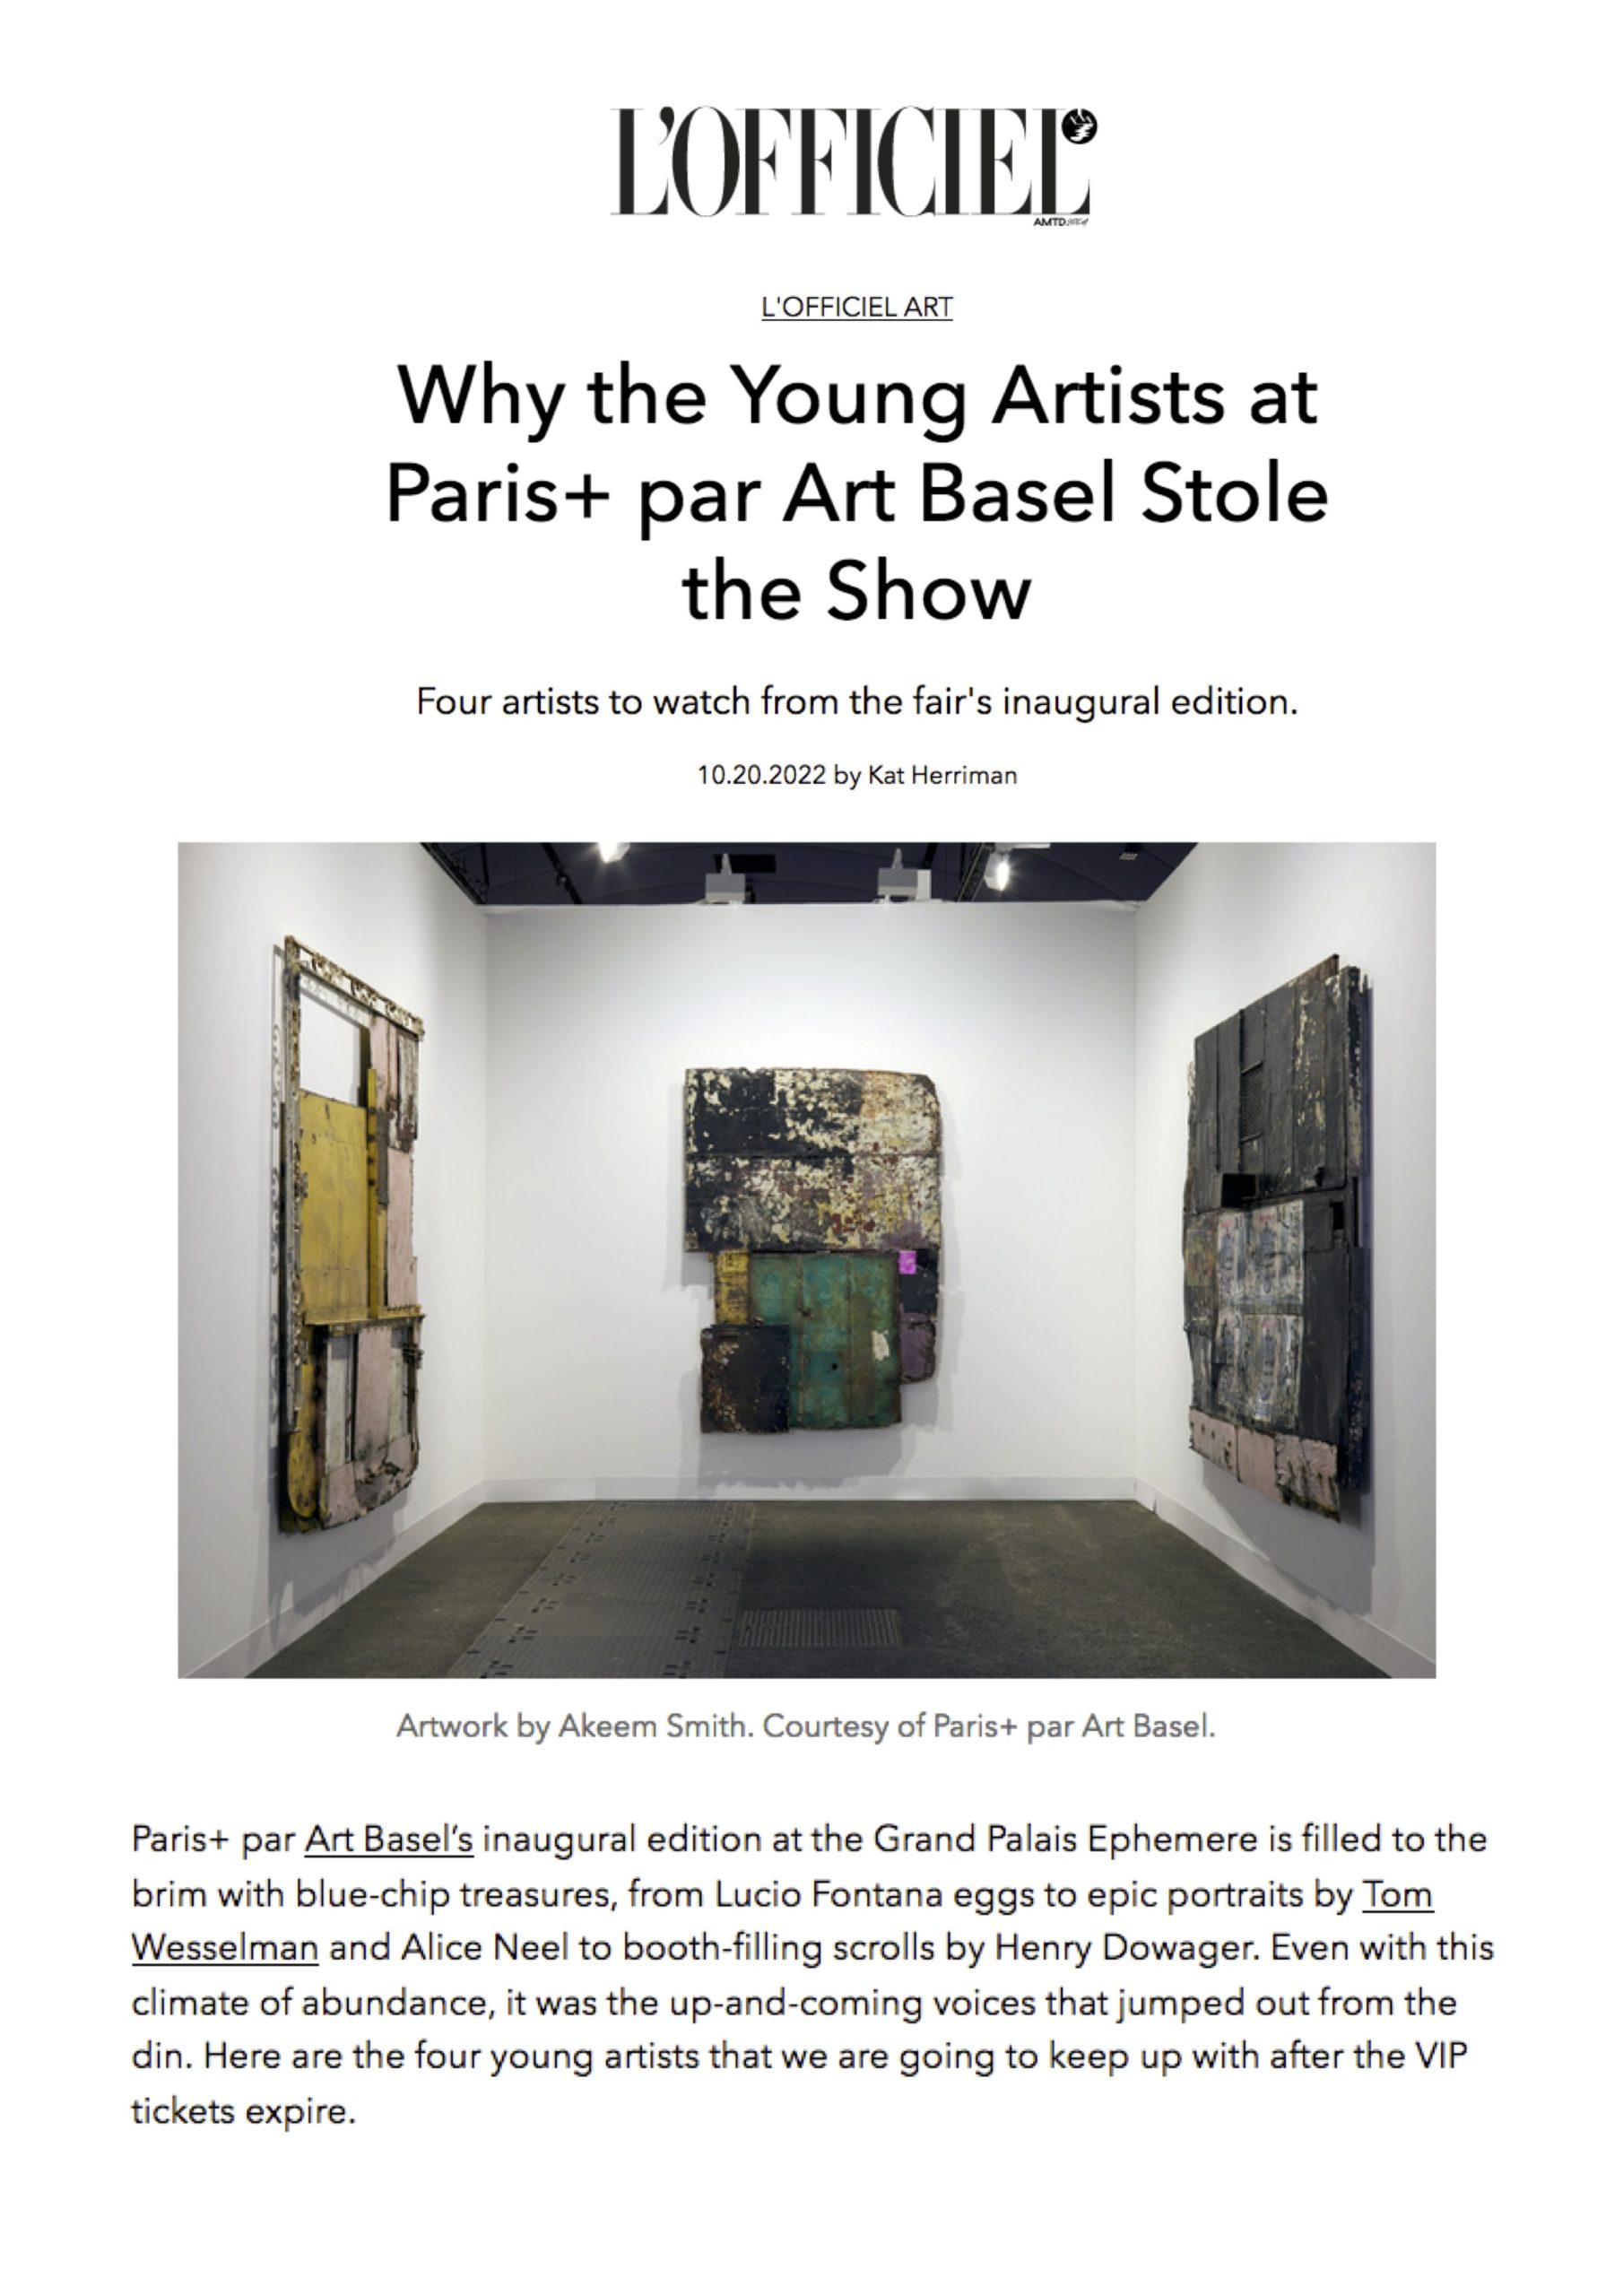 Kat Herriman, "Why The Young Artists at Paris+ par Art Basel Stole the Show", L'Officiel Art, 2022